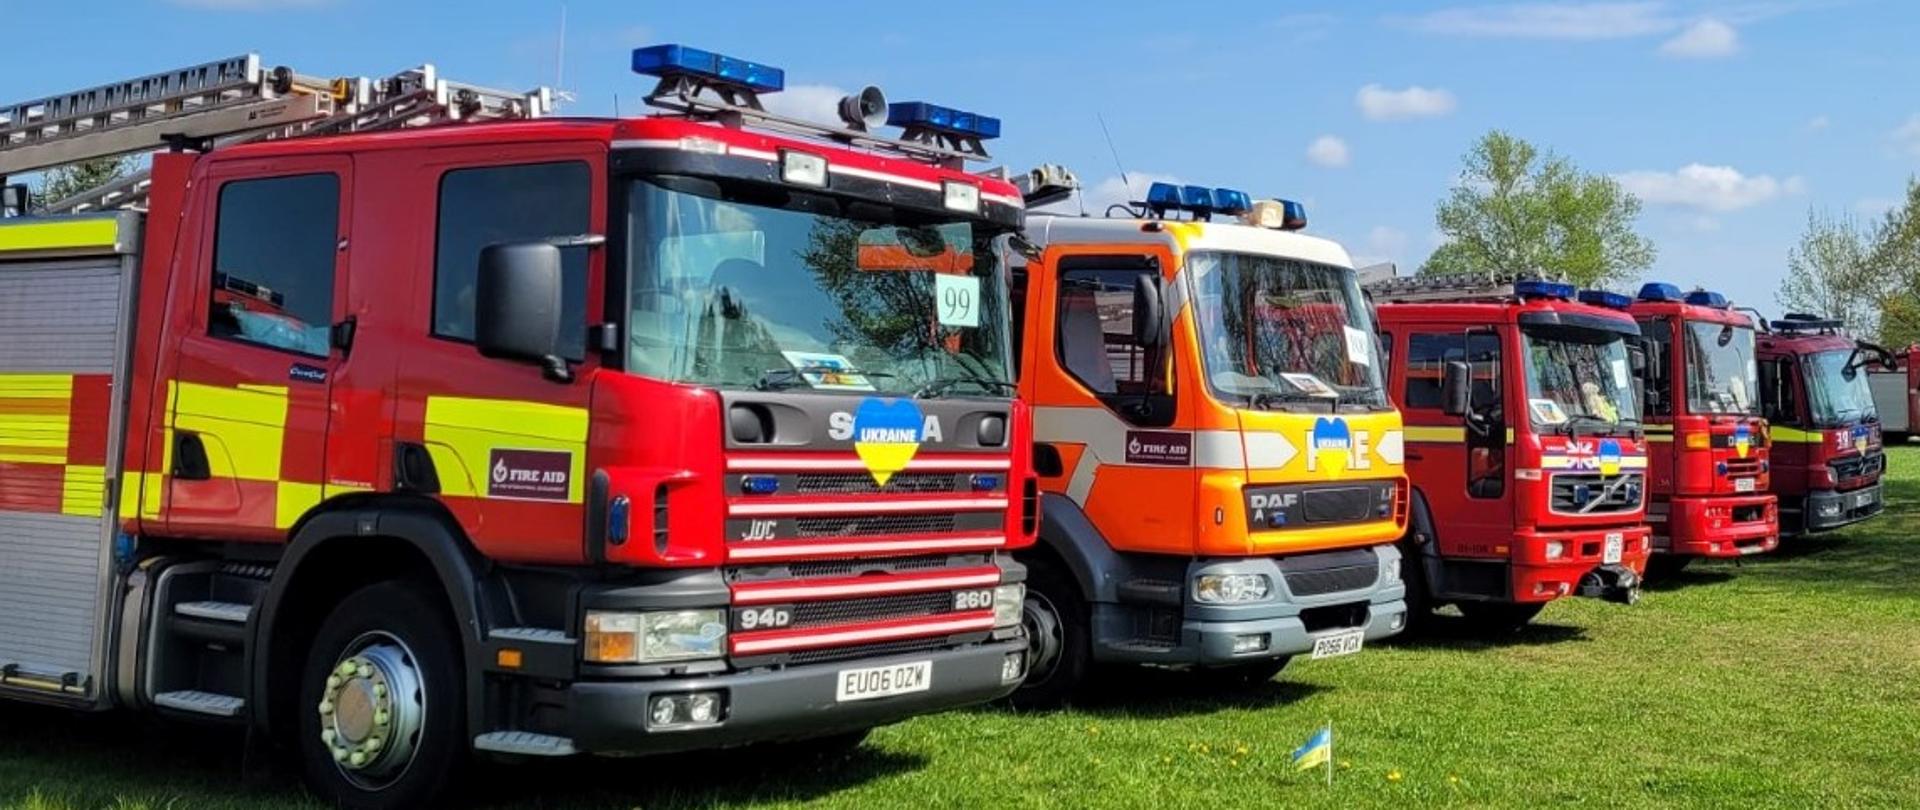 Na zdjęciu widać pięć samochodów straży pożarnej stojących na podłożu trawiastym.